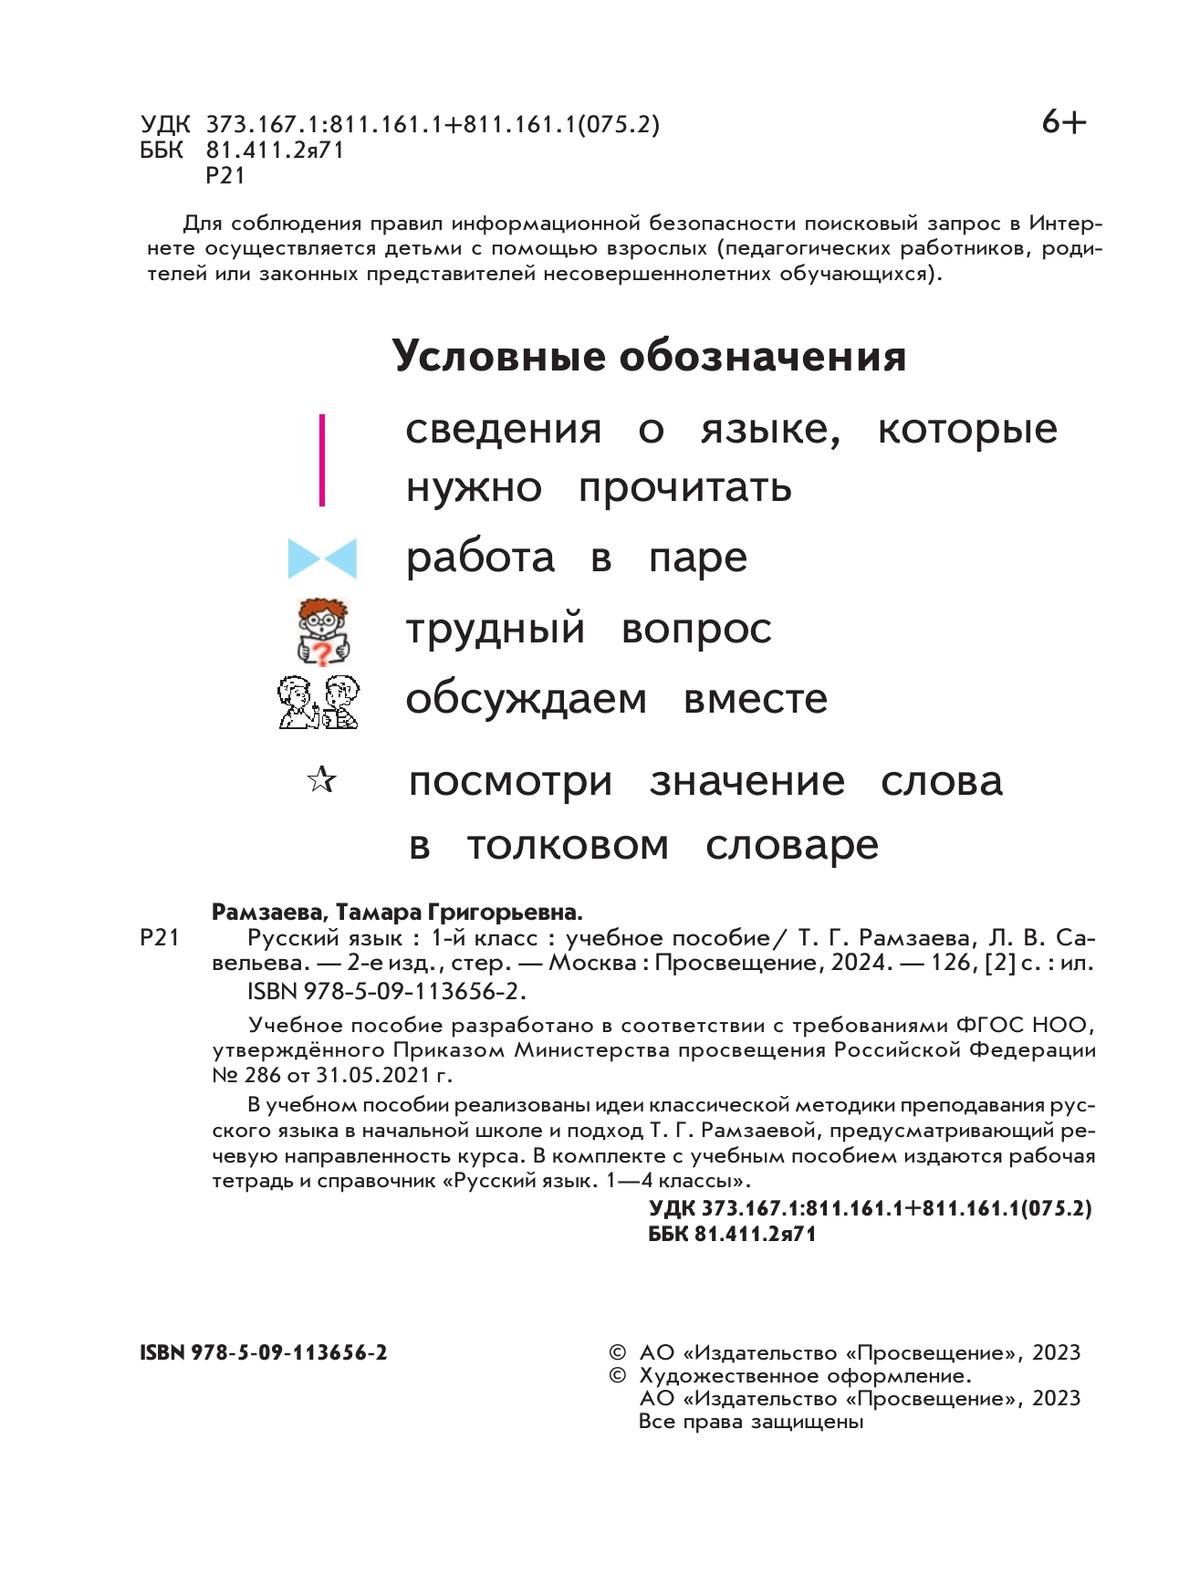 Русский язык. 1 класс. Учебное пособие 2